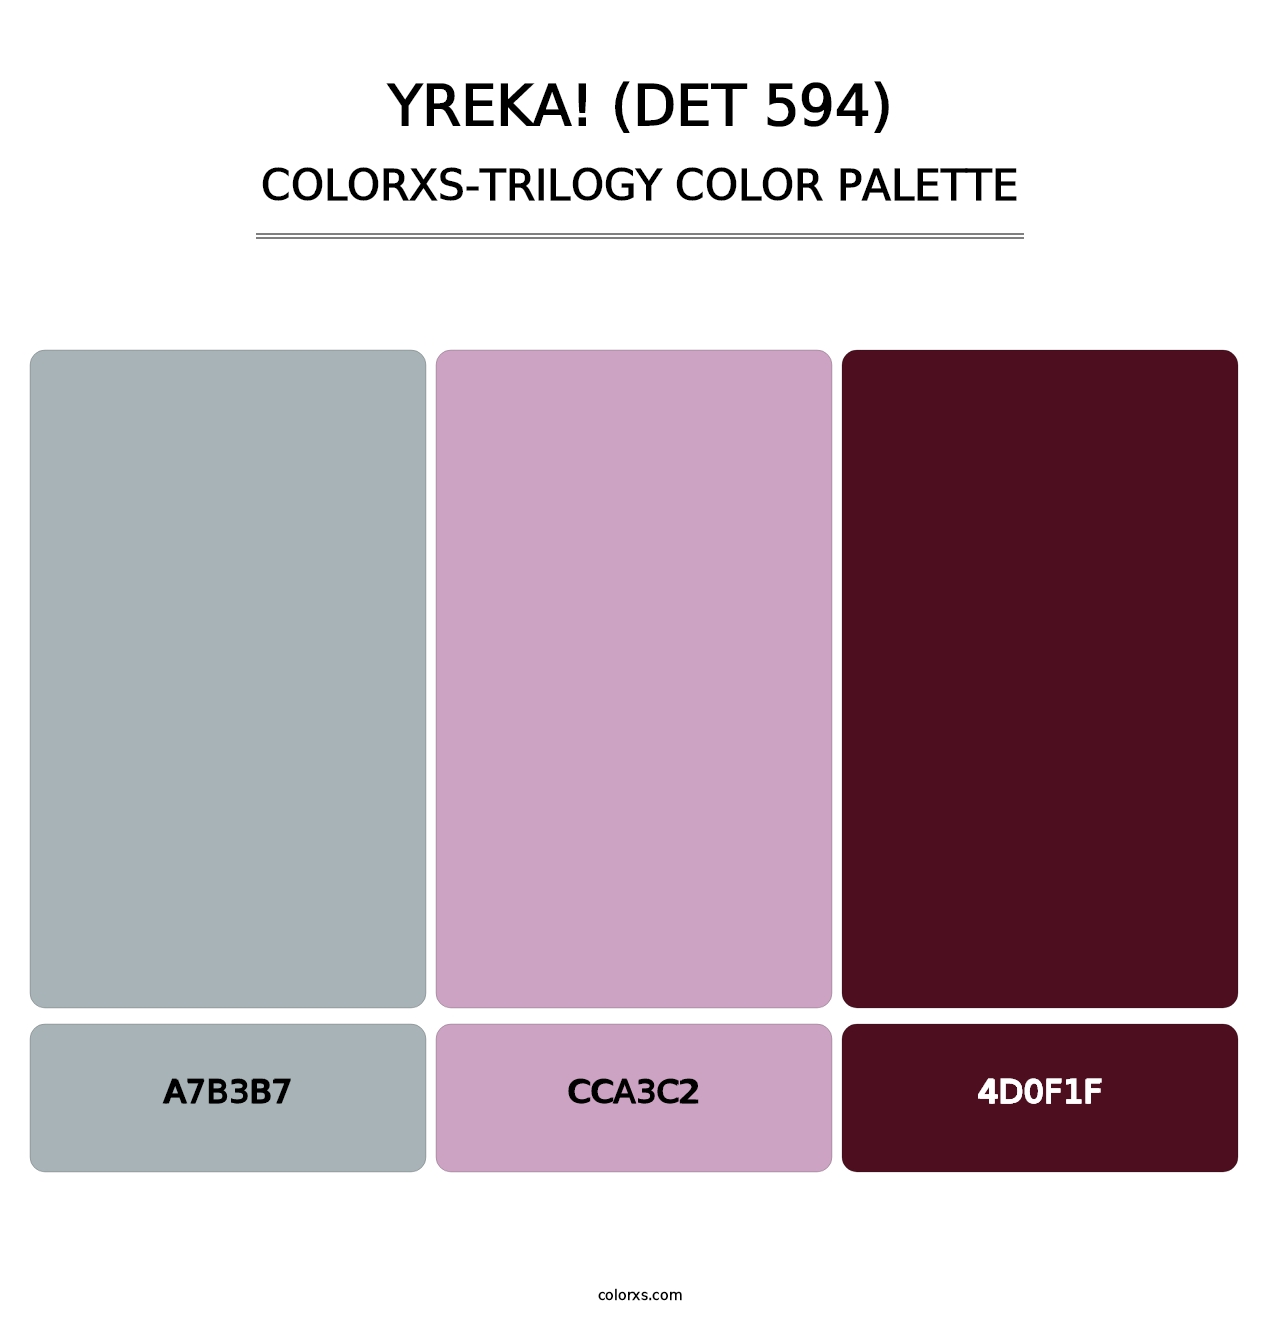 Yreka! (DET 594) - Colorxs Trilogy Palette